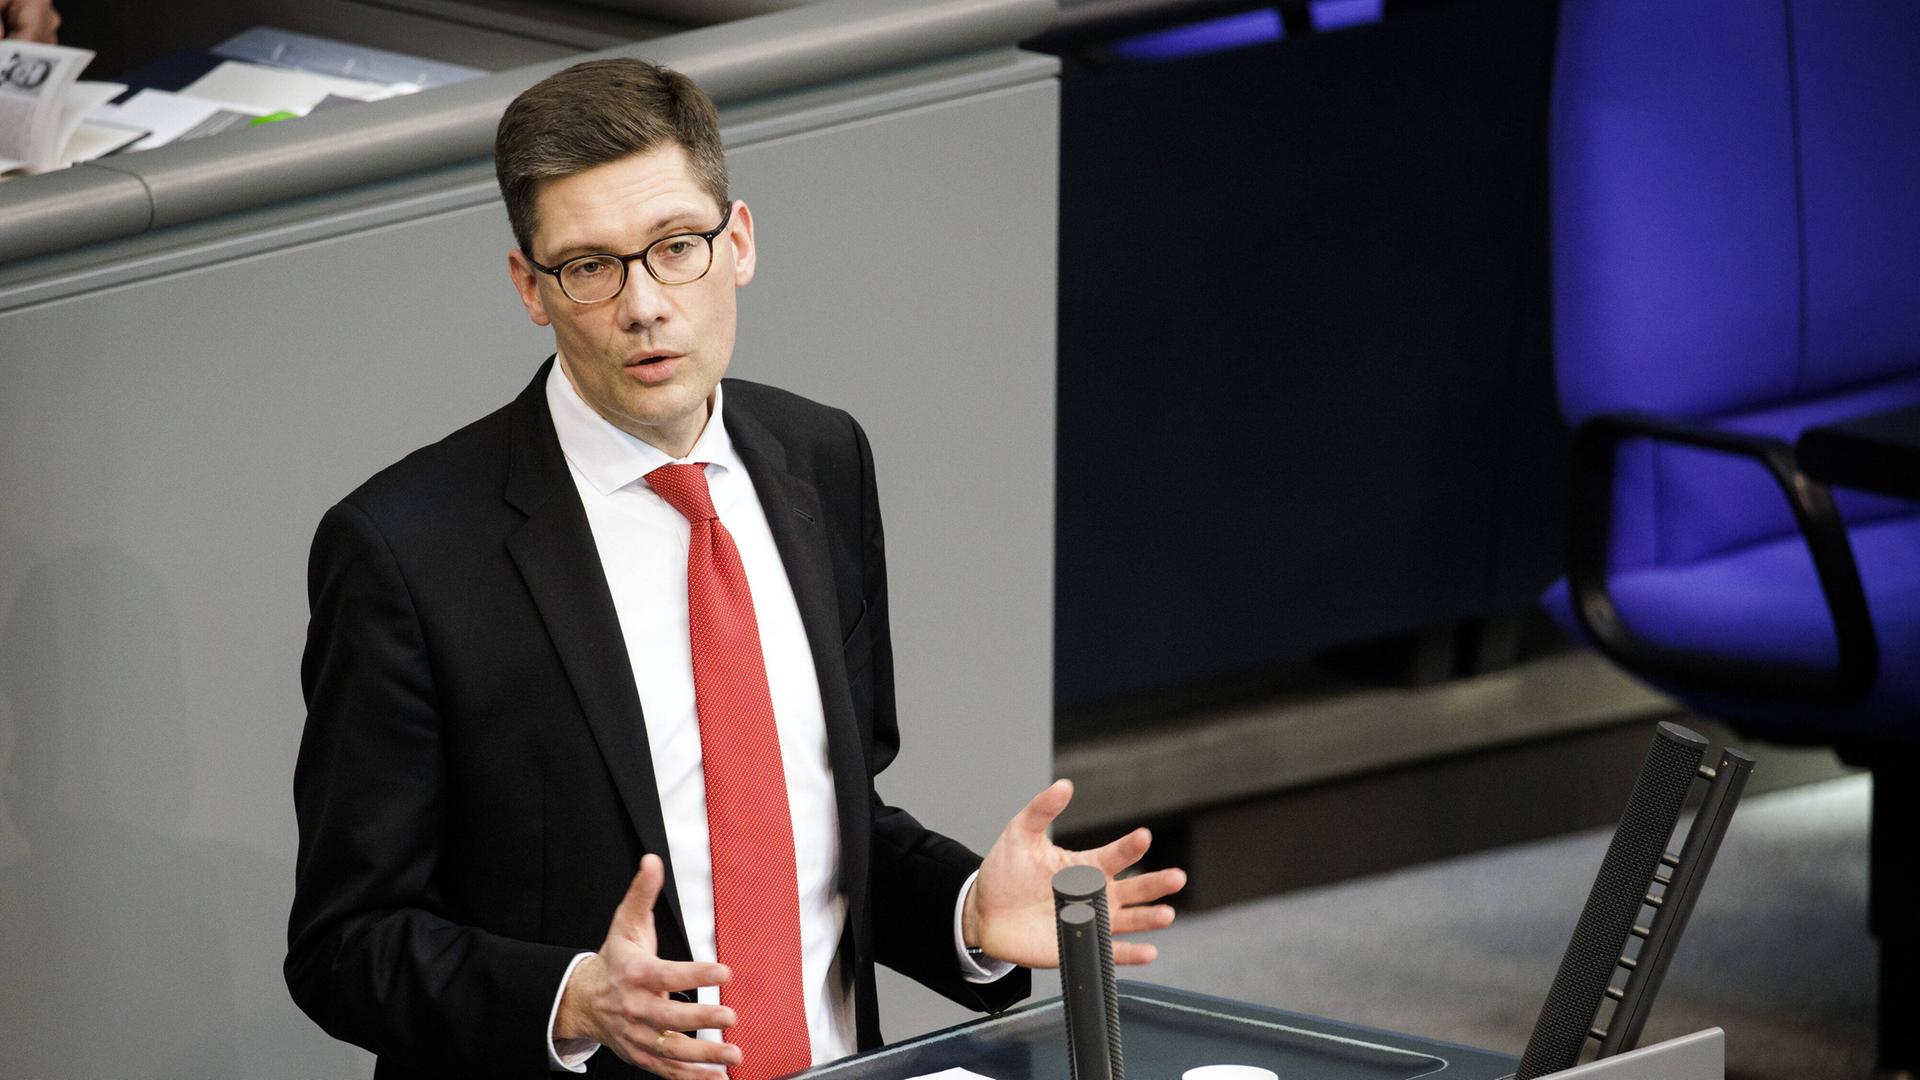 Christian Hirte, MdB, CDU/CSU, hält eine Rede im Rahmen der 23. Sitzung des Deutschen Bundestages in Berlin.